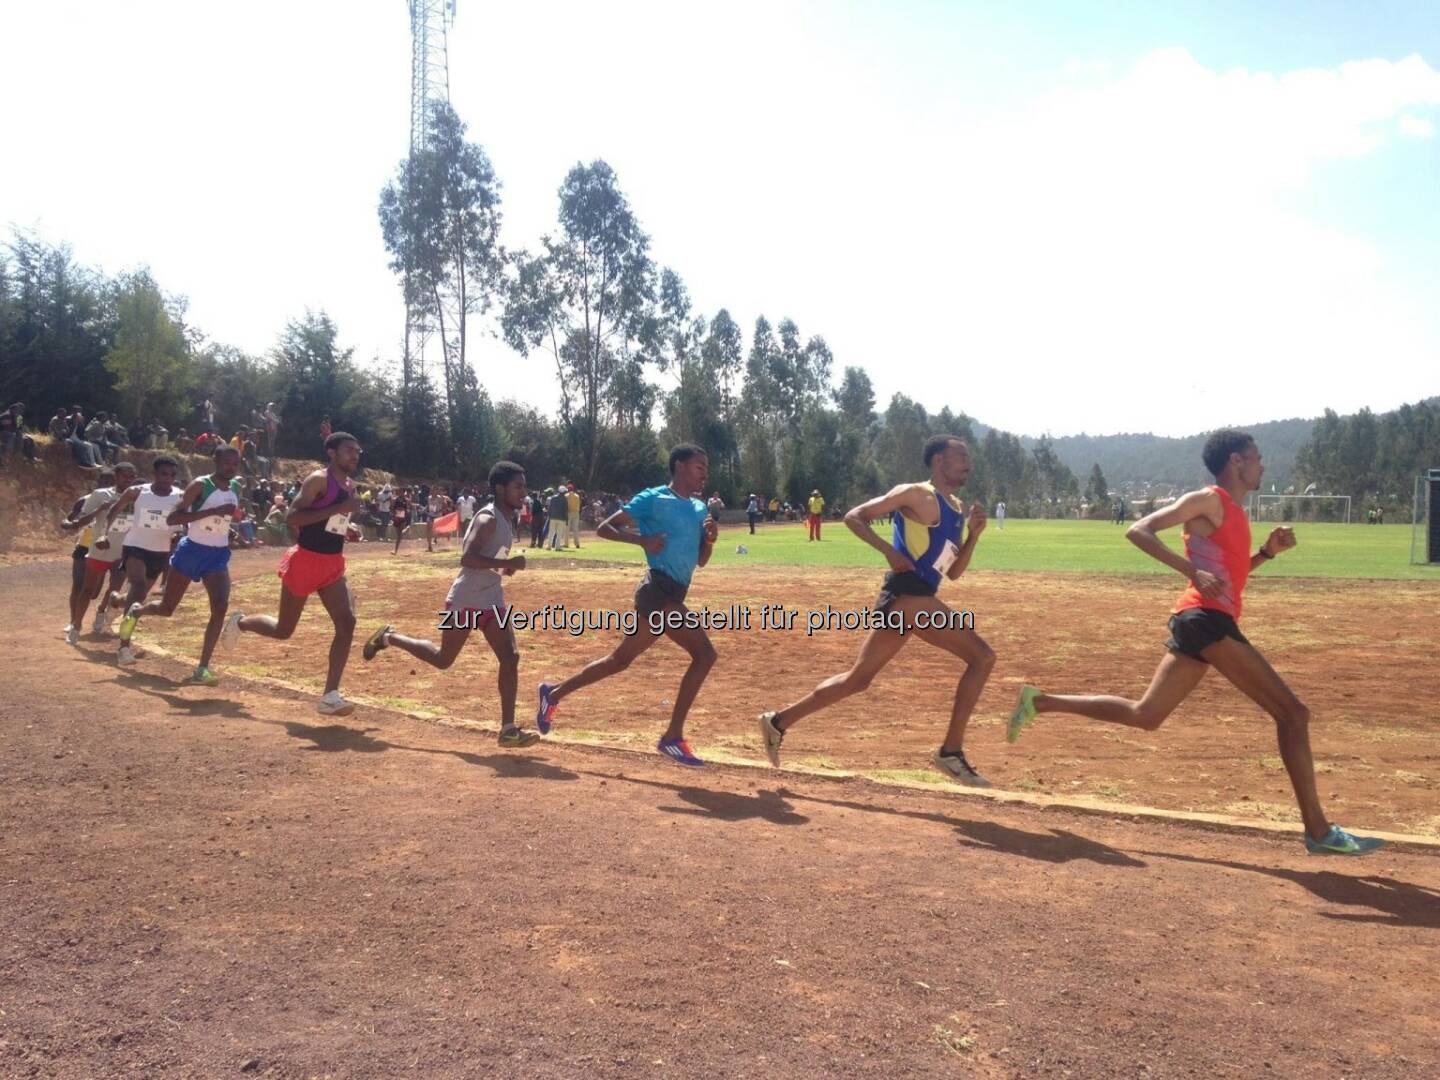 laufen, Rennen, track and field, Tartan, Äthiopien, hintereinander, Laufschritt, Gleichschritt